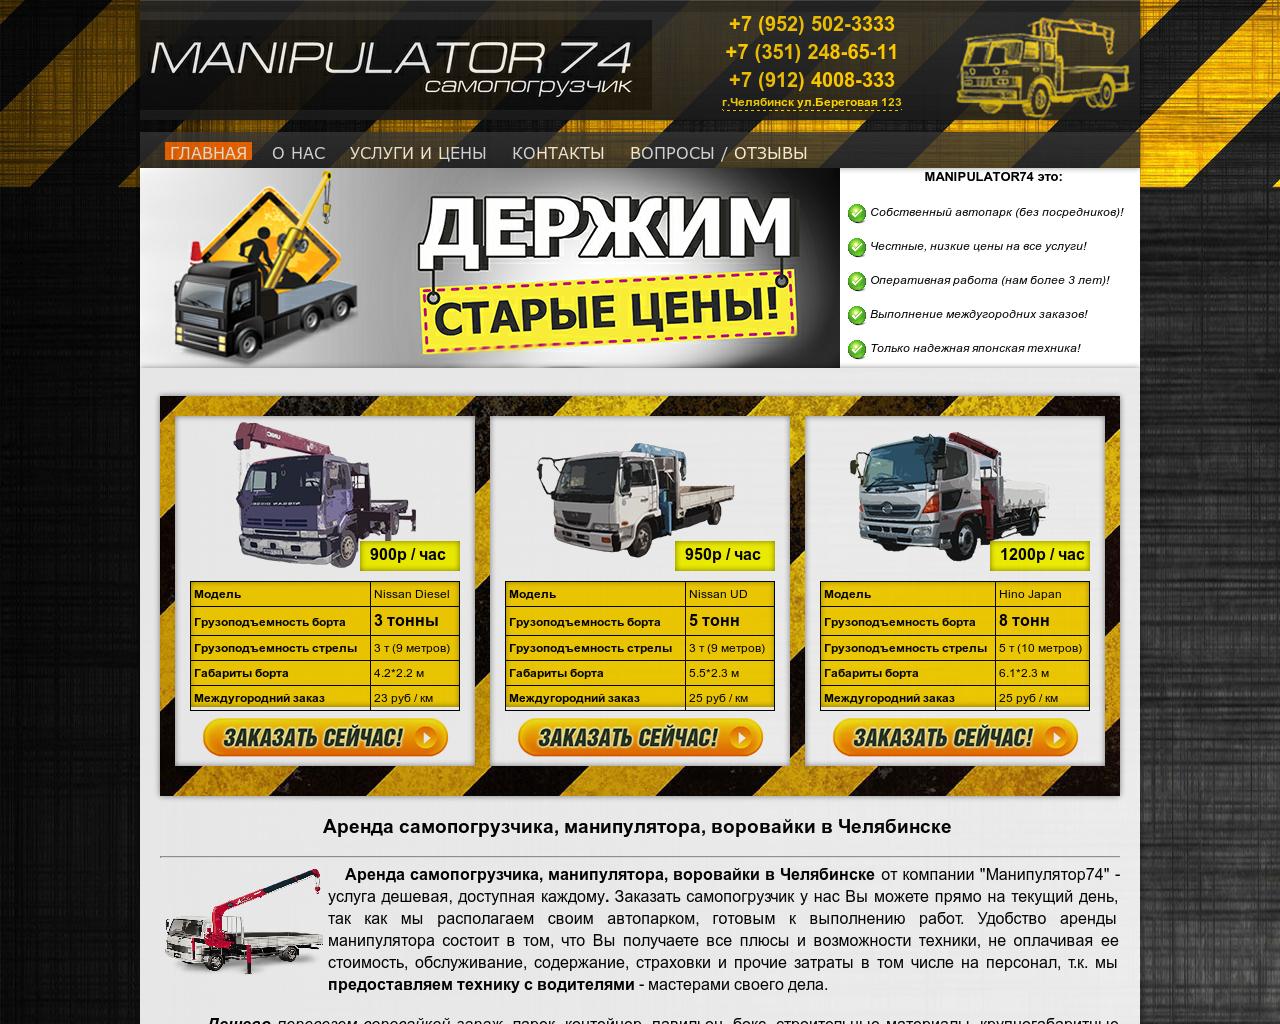 Изображение сайта manipulator74.ru в разрешении 1280x1024